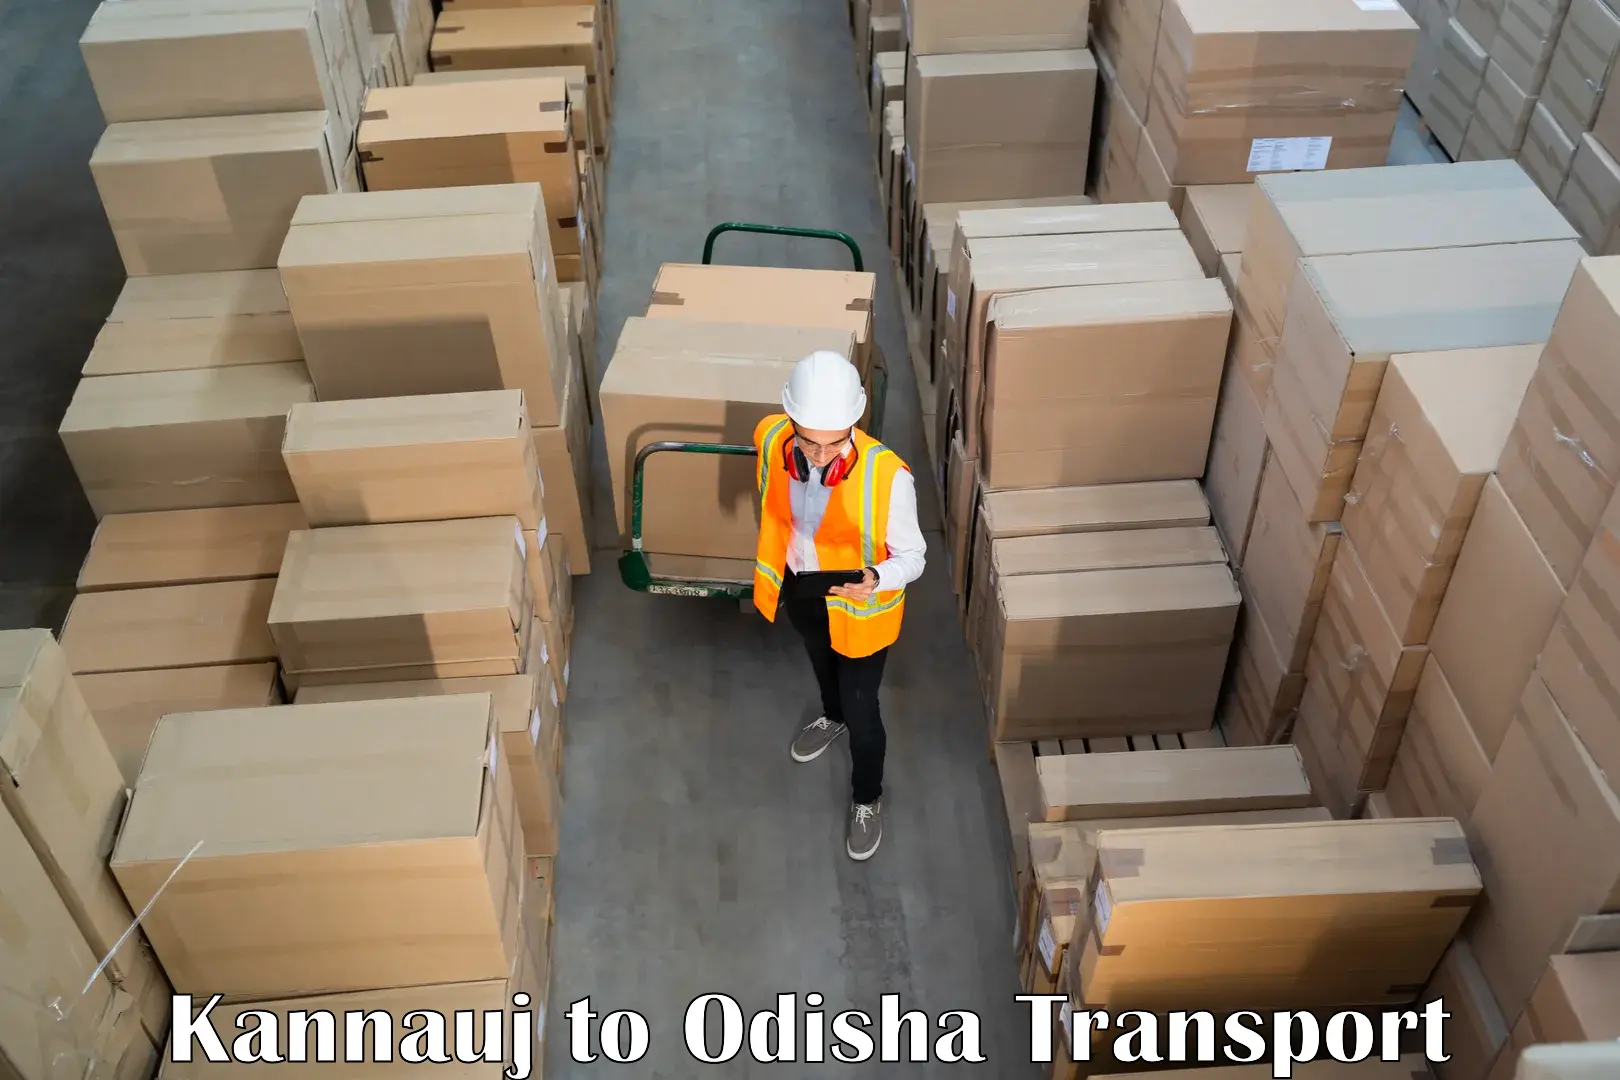 Shipping services Kannauj to Tihidi